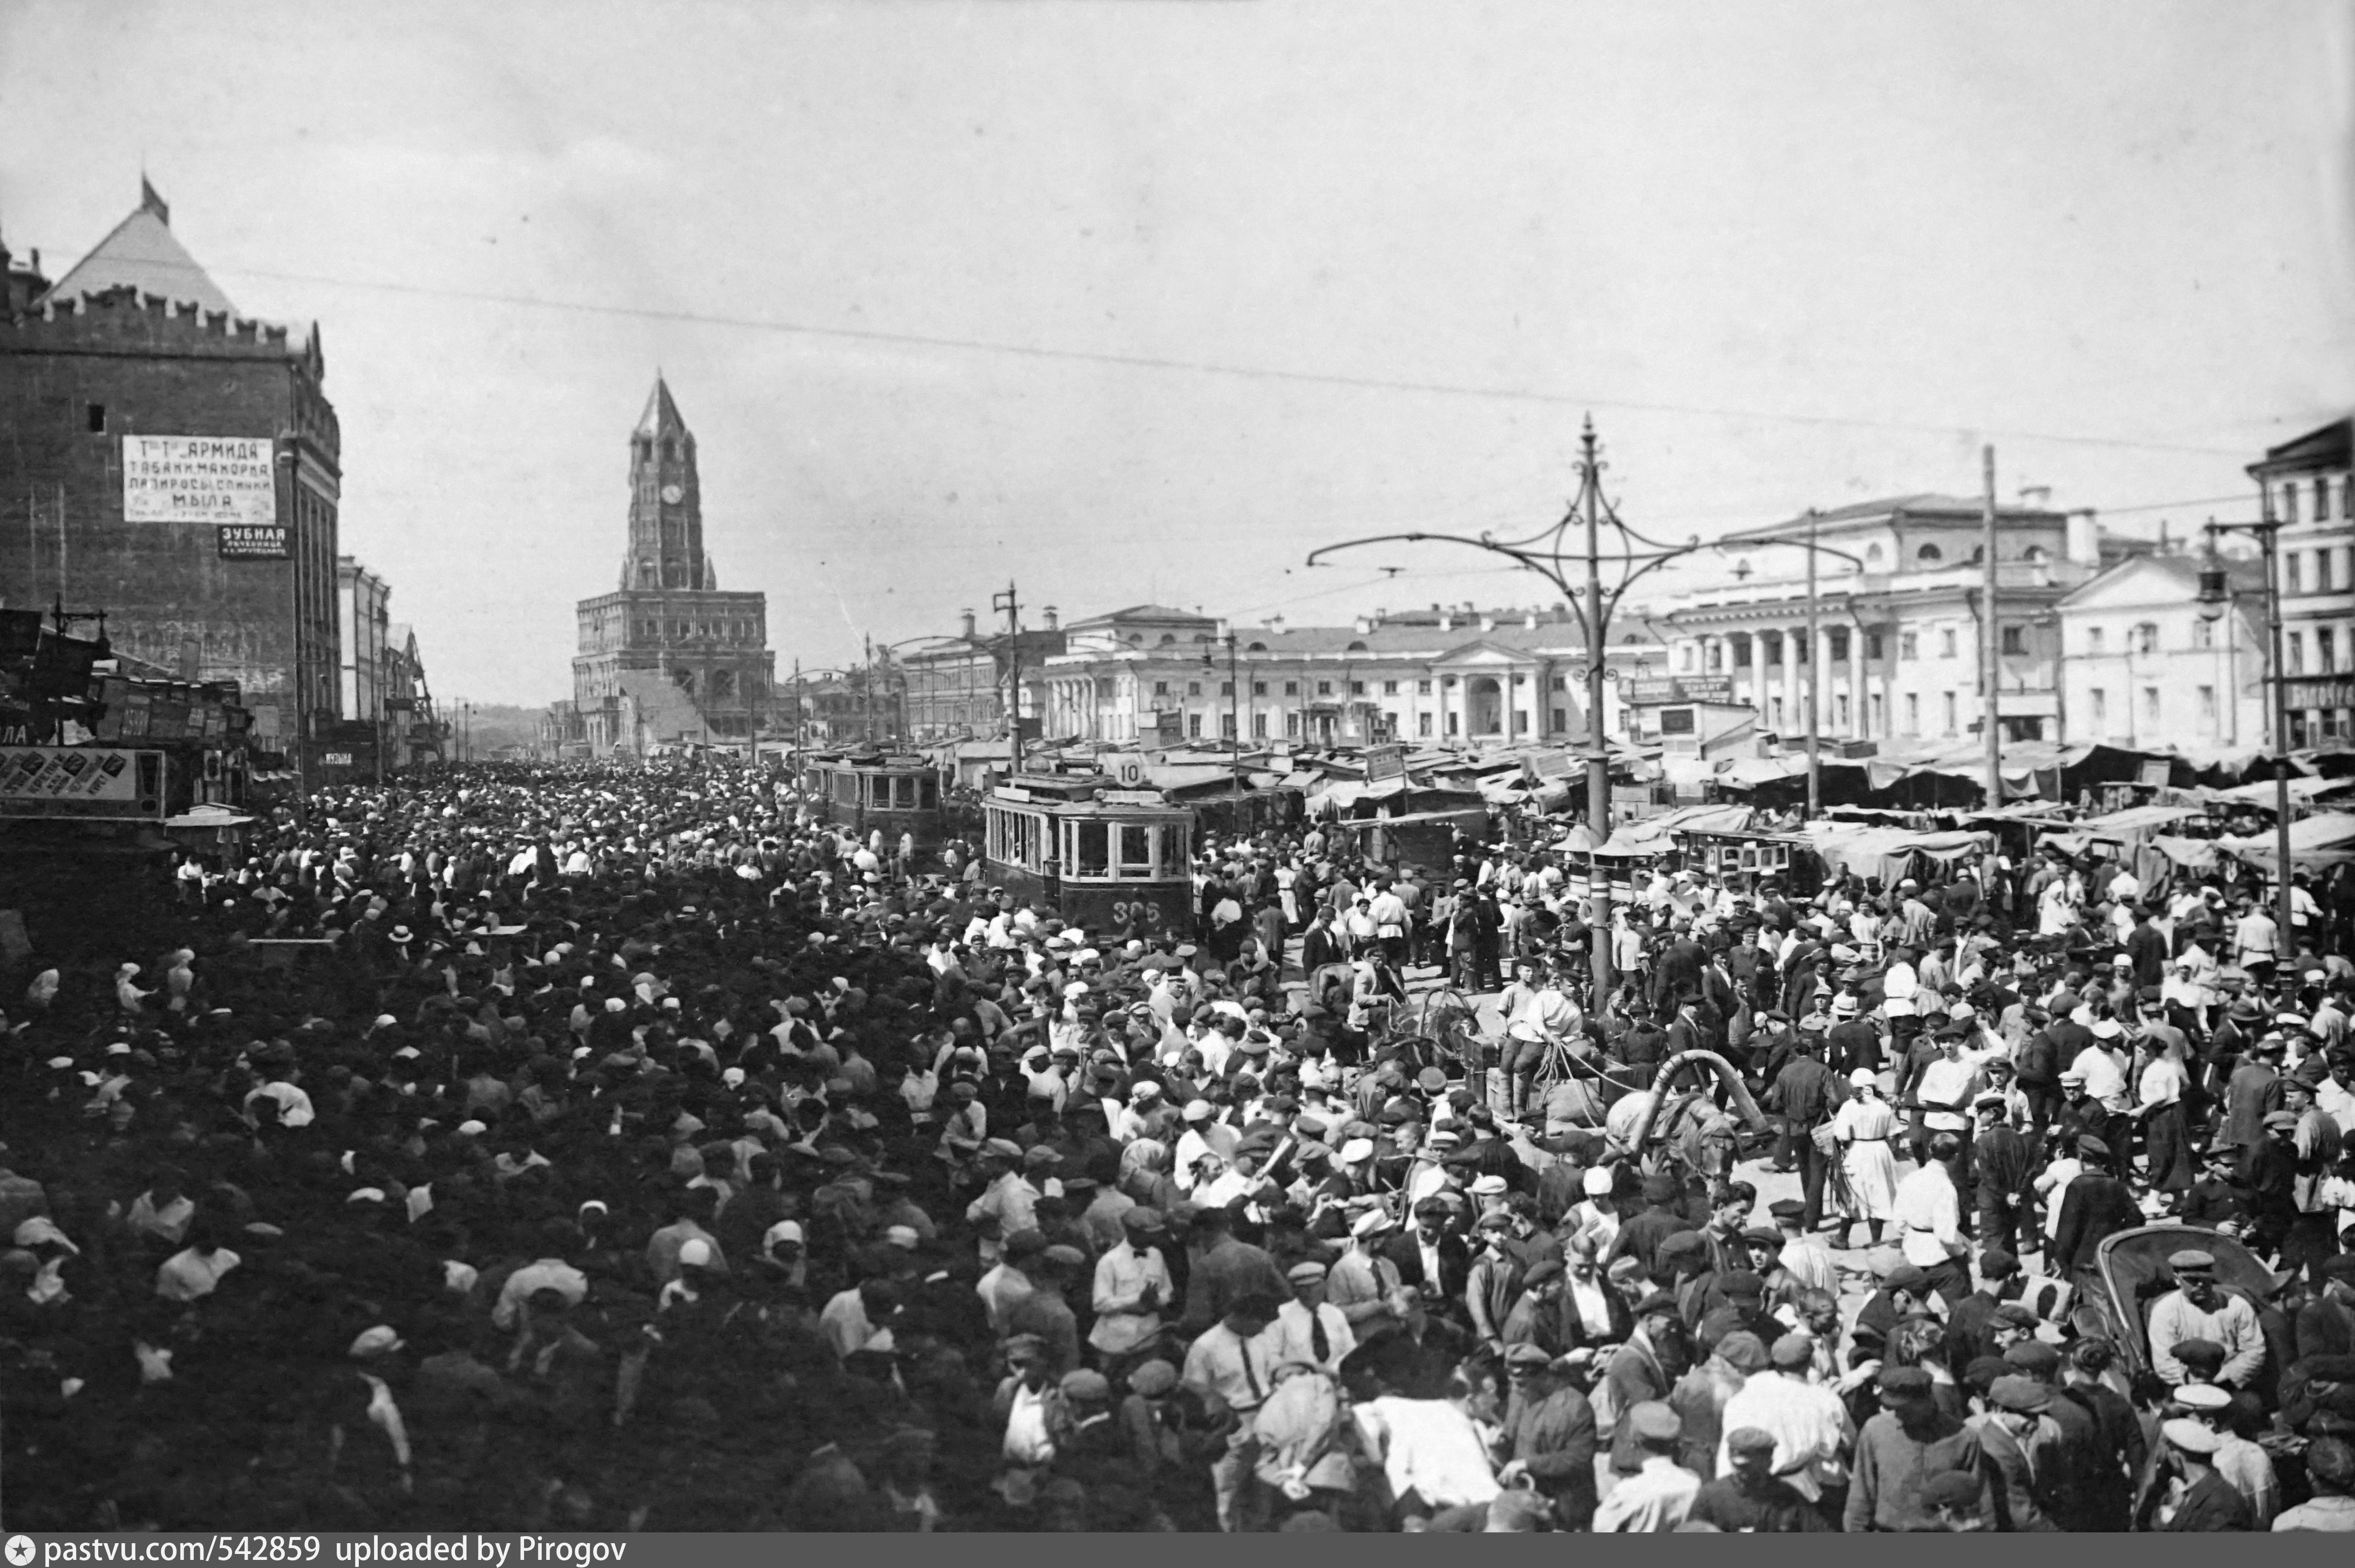 6 октября 20 года. Сухаревский рынок в Москве 1920-е годы. Москва в 1920-е годы. Рынок Сухаревка в Москве. Сухаревский рынок 19 век.